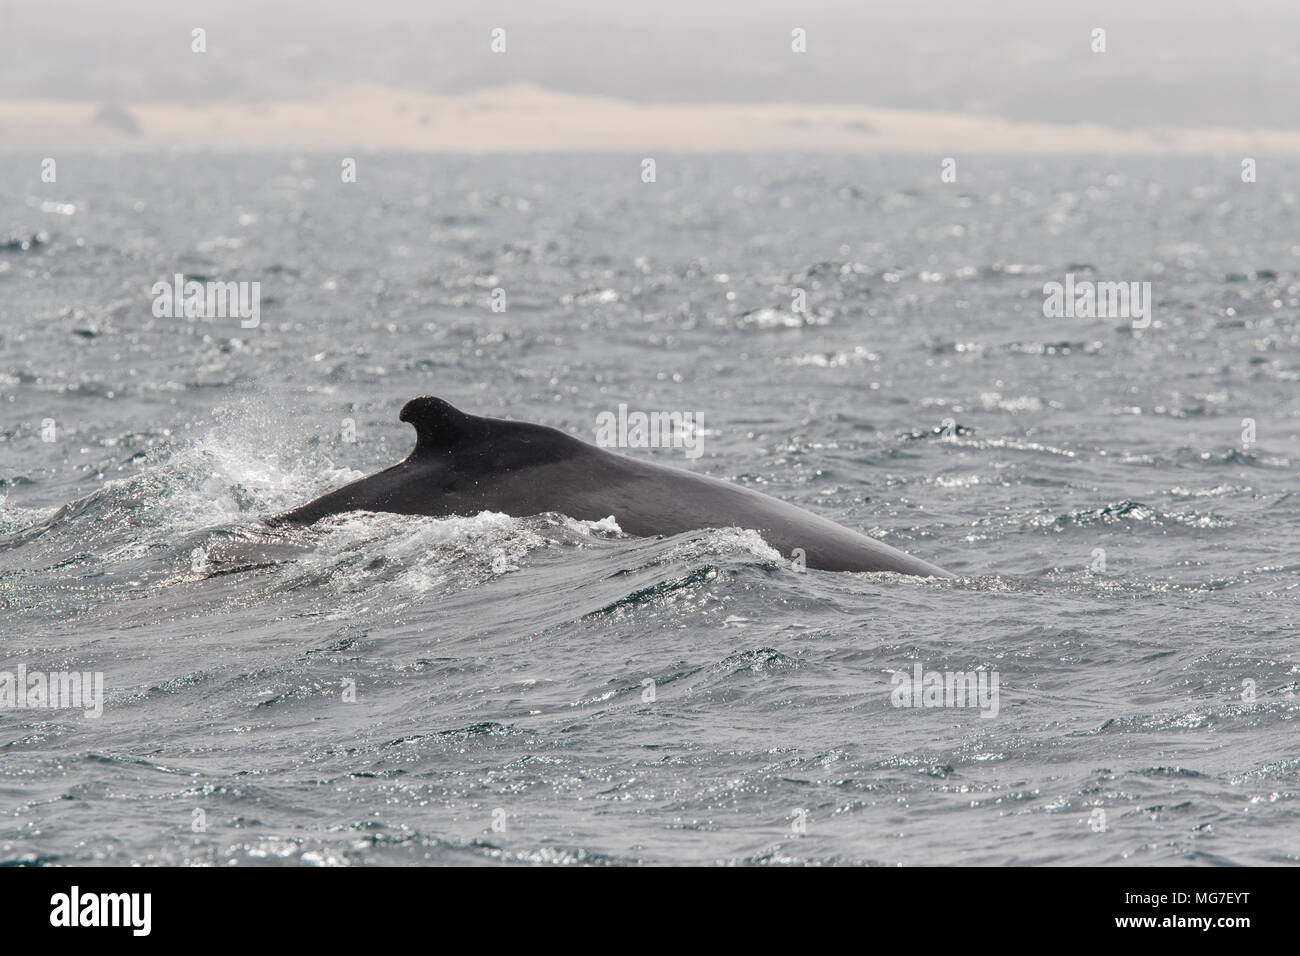 Buceo de la ballena jorobada (Megaptera novaeangliae), Boa Vista, Cabo Verde Foto de stock